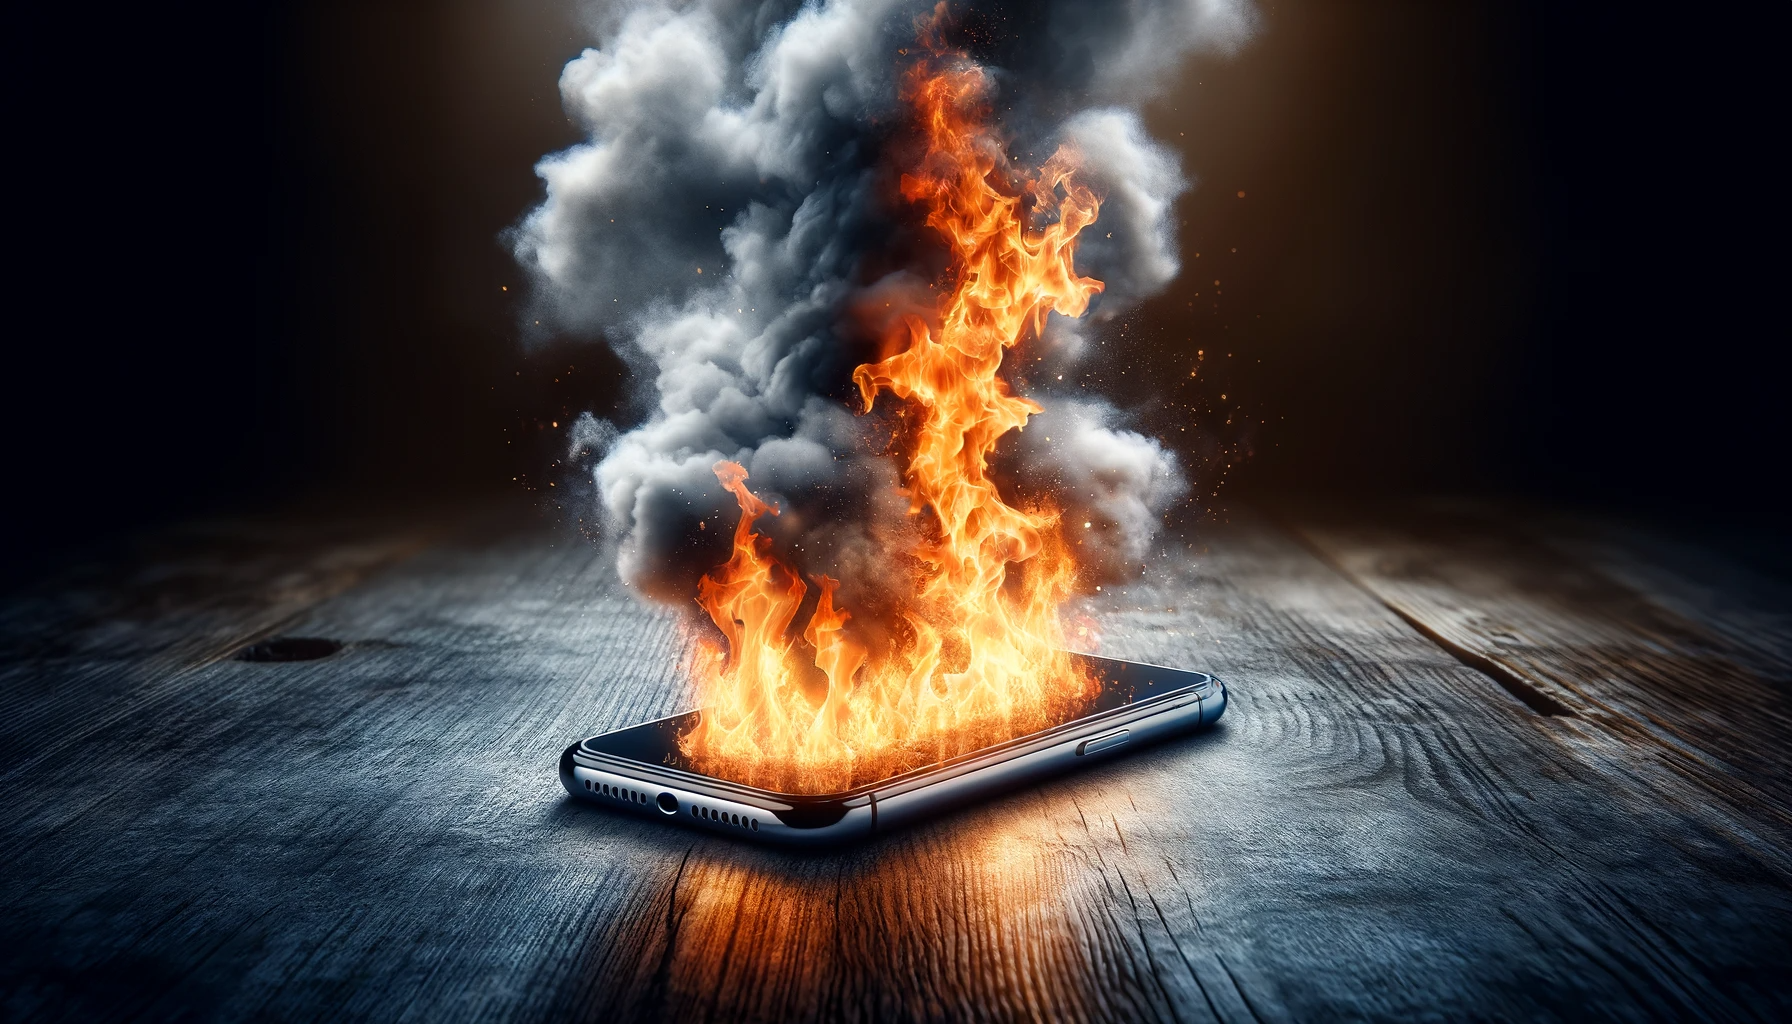 Um Redmi Note 9s pega fogo dentro do bolso da calça, causando queimaduras na perna do usuário